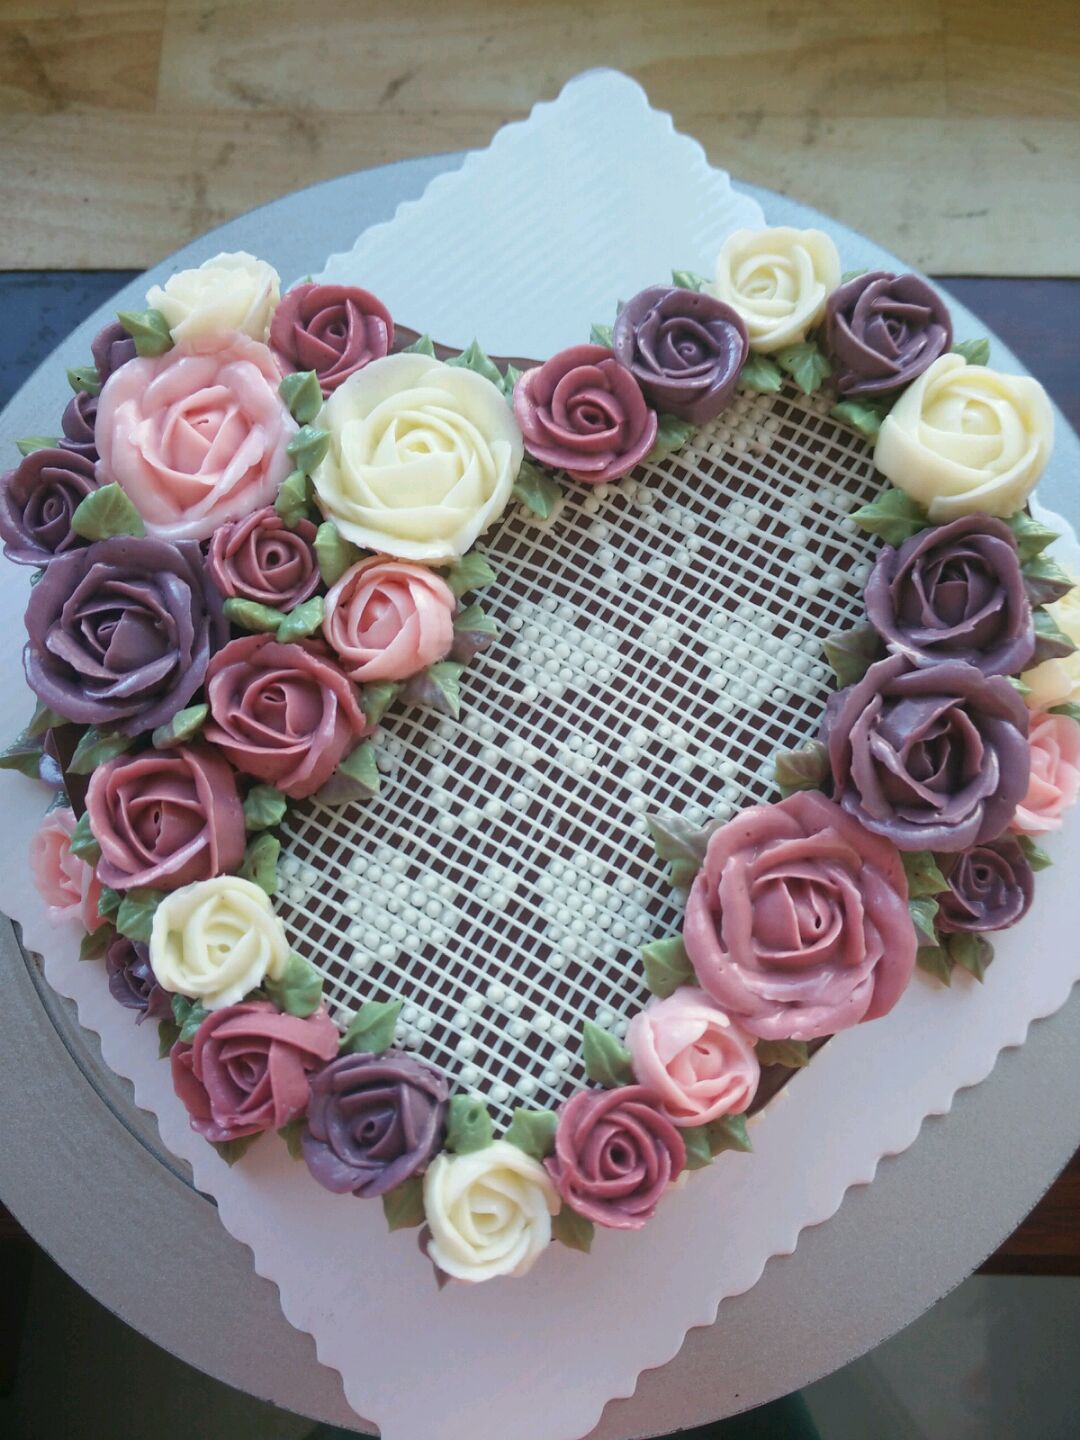 裱花蛋糕怎么做_裱花蛋糕的做法_豆果美食